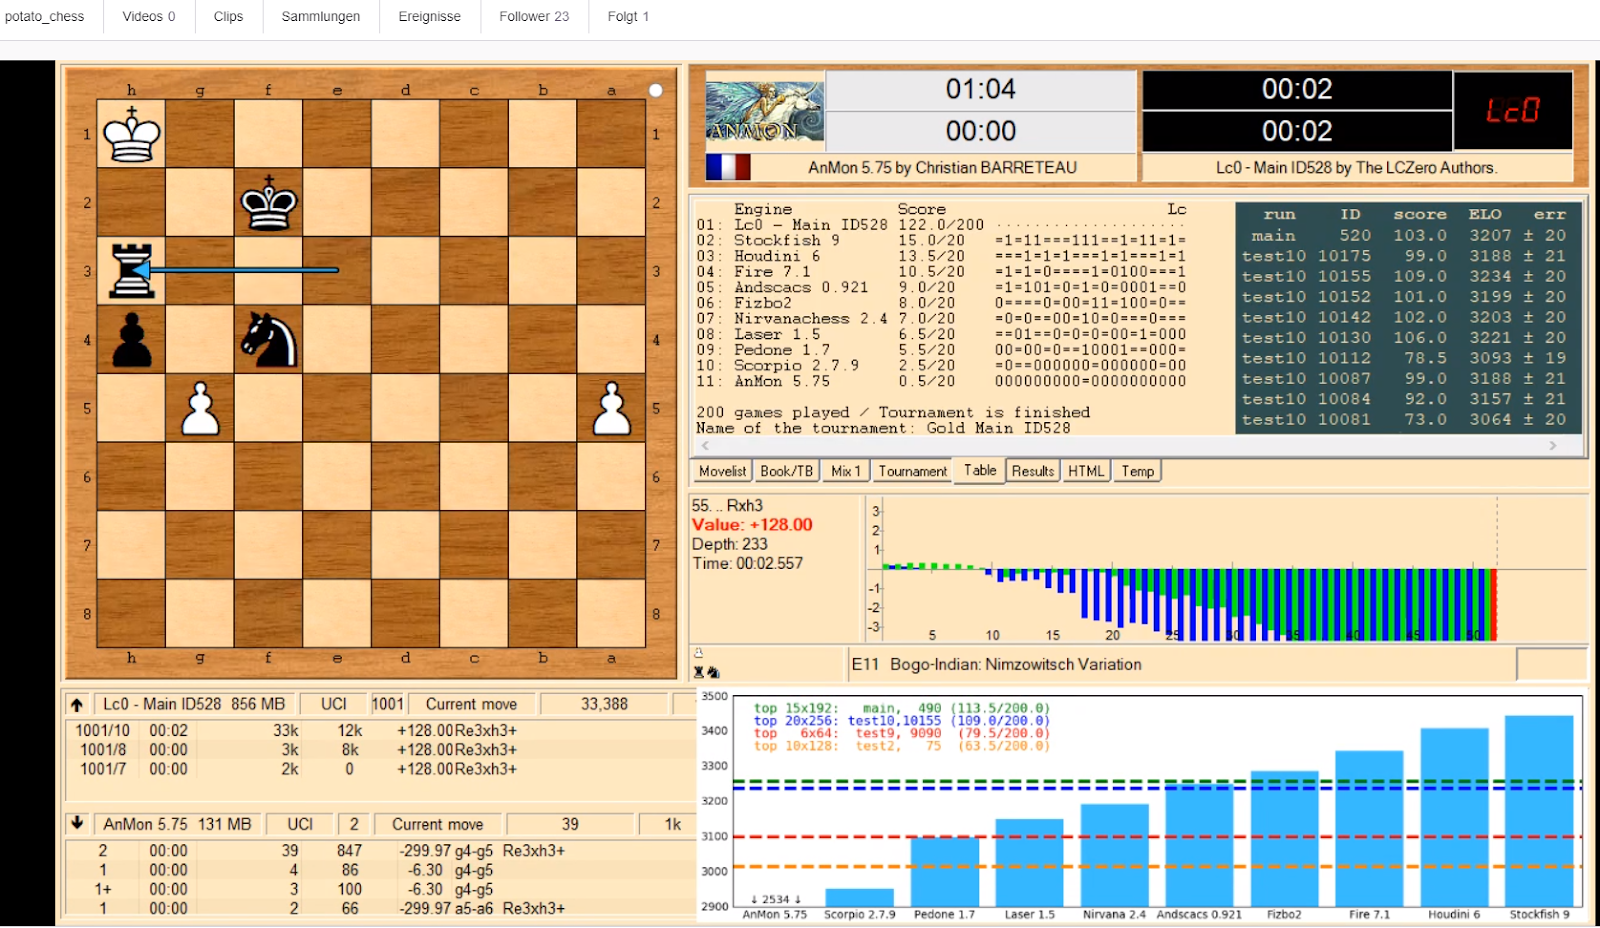 Dr. Rudolf Posch: Neural Network AlphaZero wins in Chess, Shogi and Go